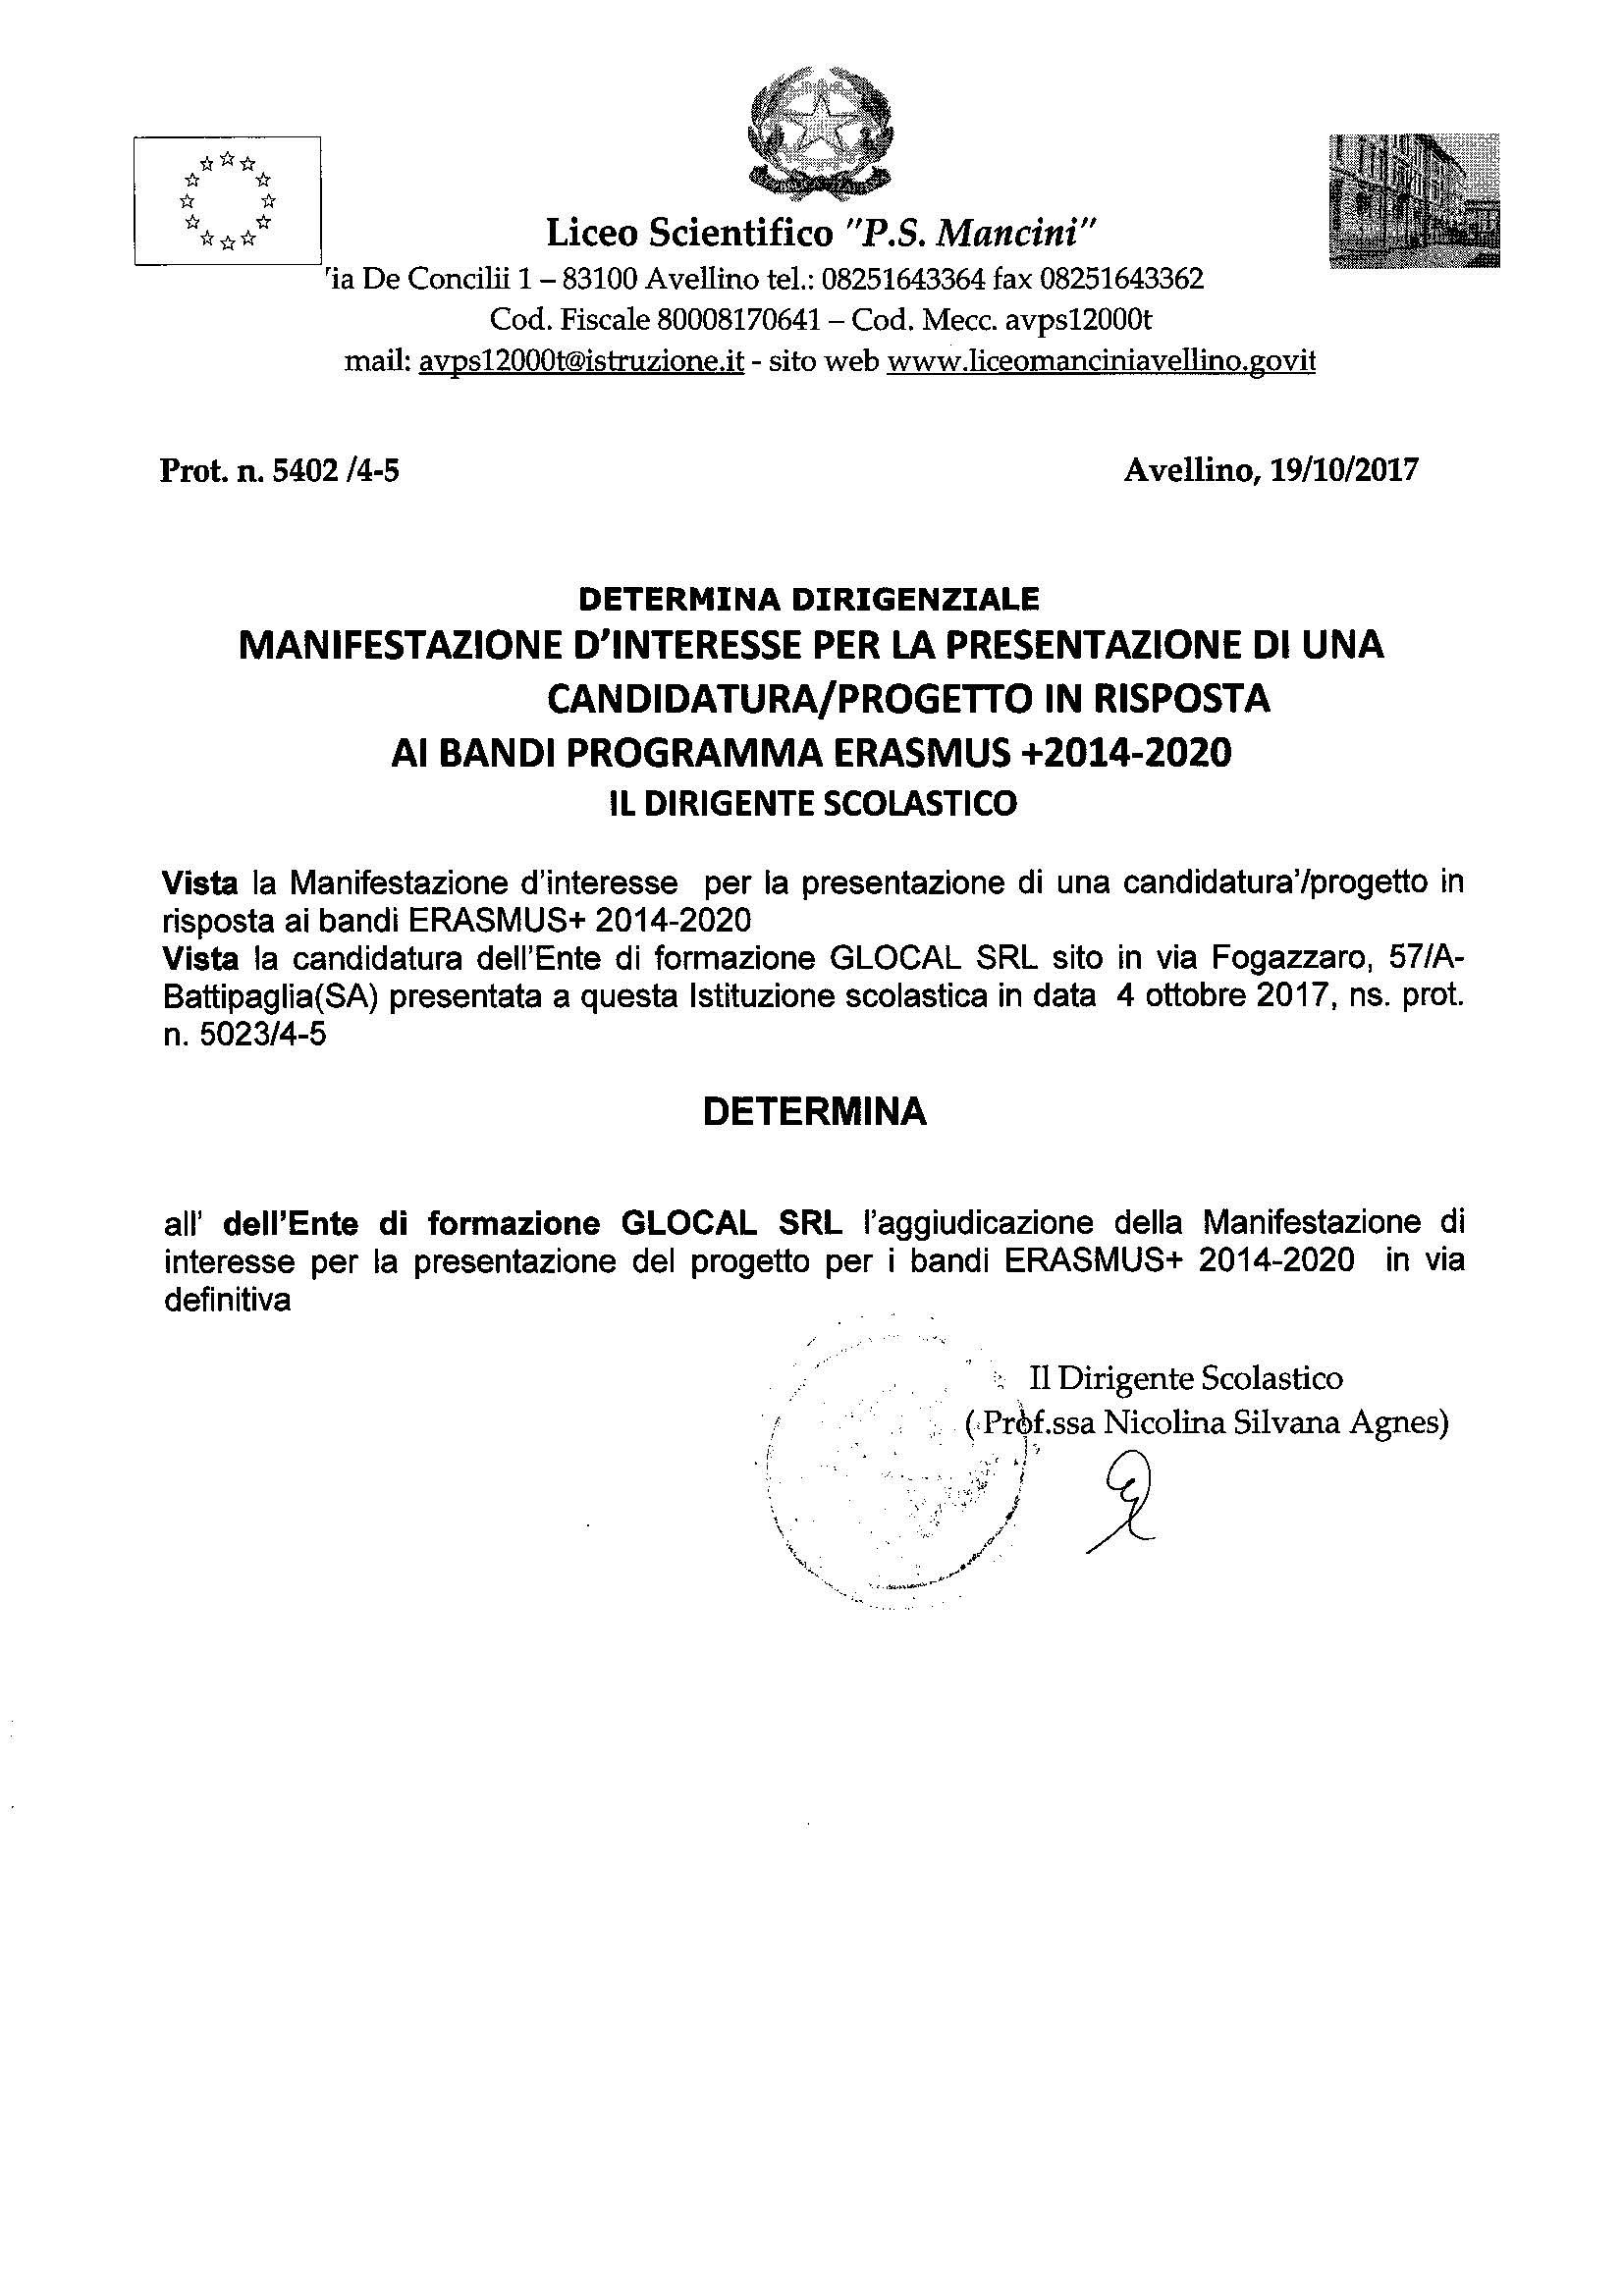 DEFINITIVA MANIFESTAZIONE INTERESSE ERASMUS 2014-2020